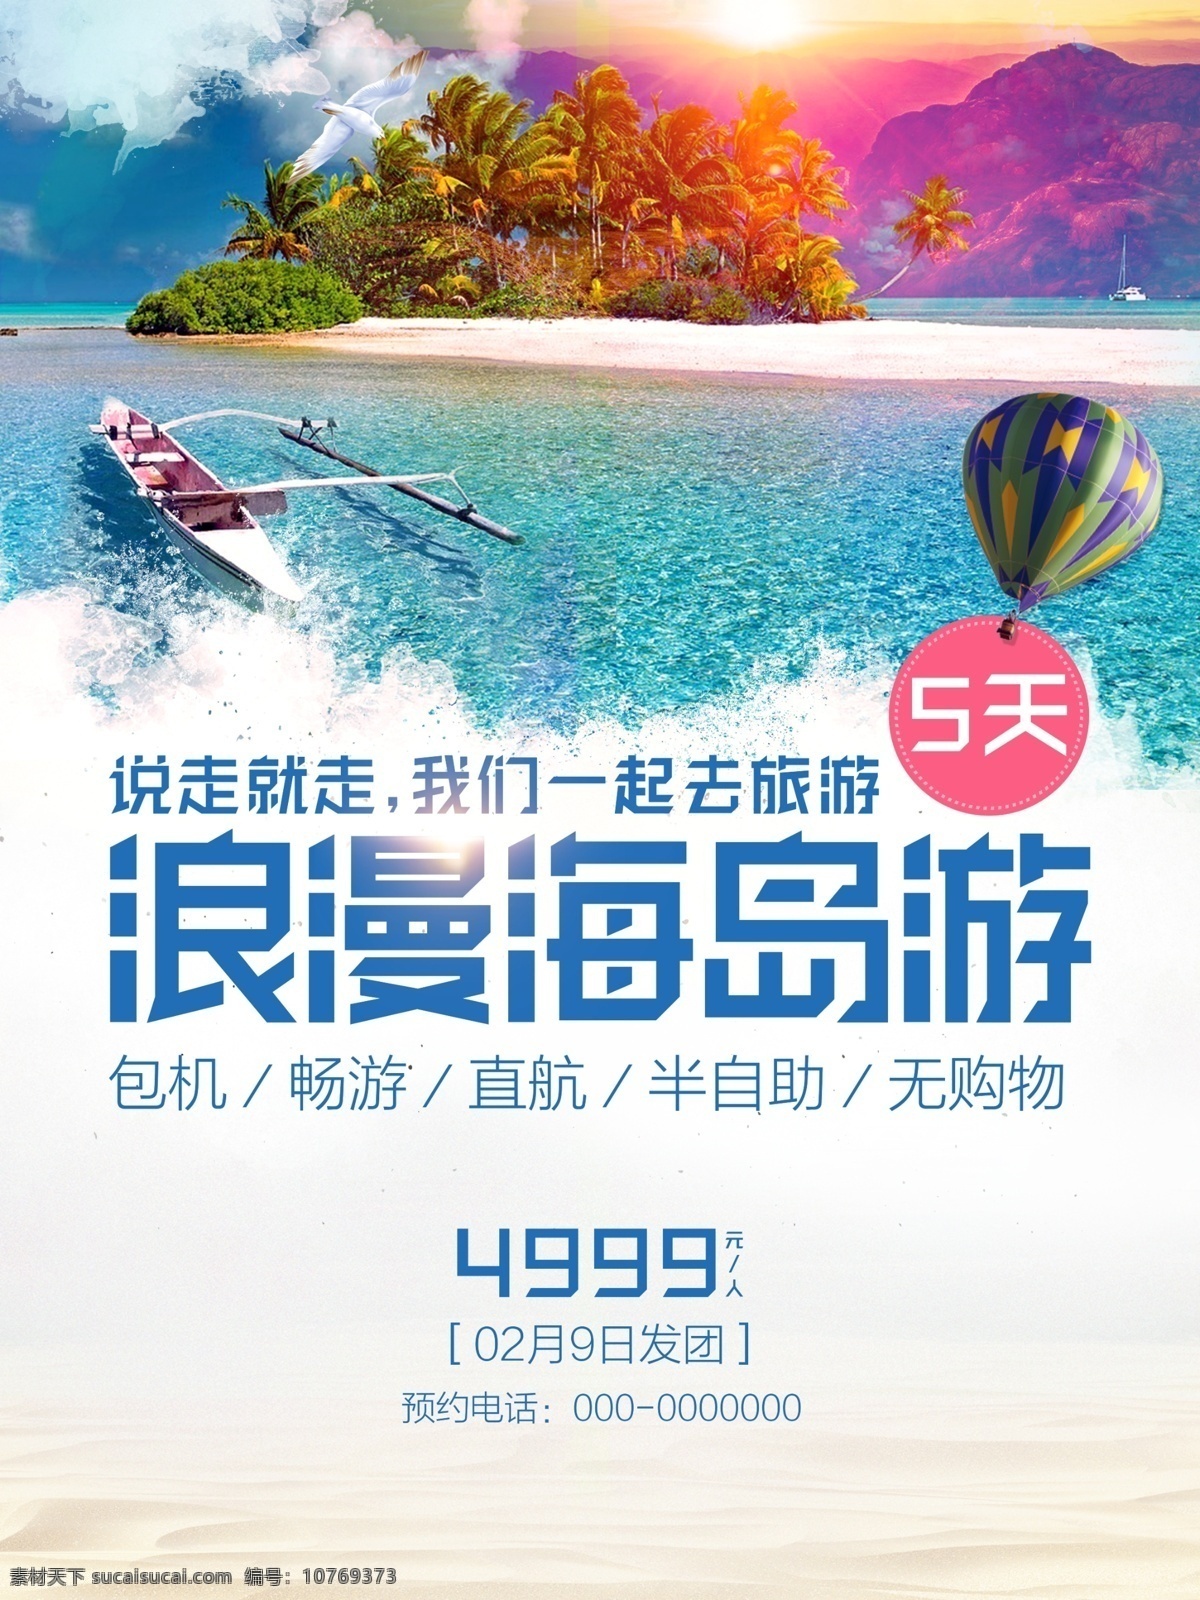 促销 国内 海边 海岛 浪漫 旅行社 旅游海报 说走就走 宣传 旅游 海报